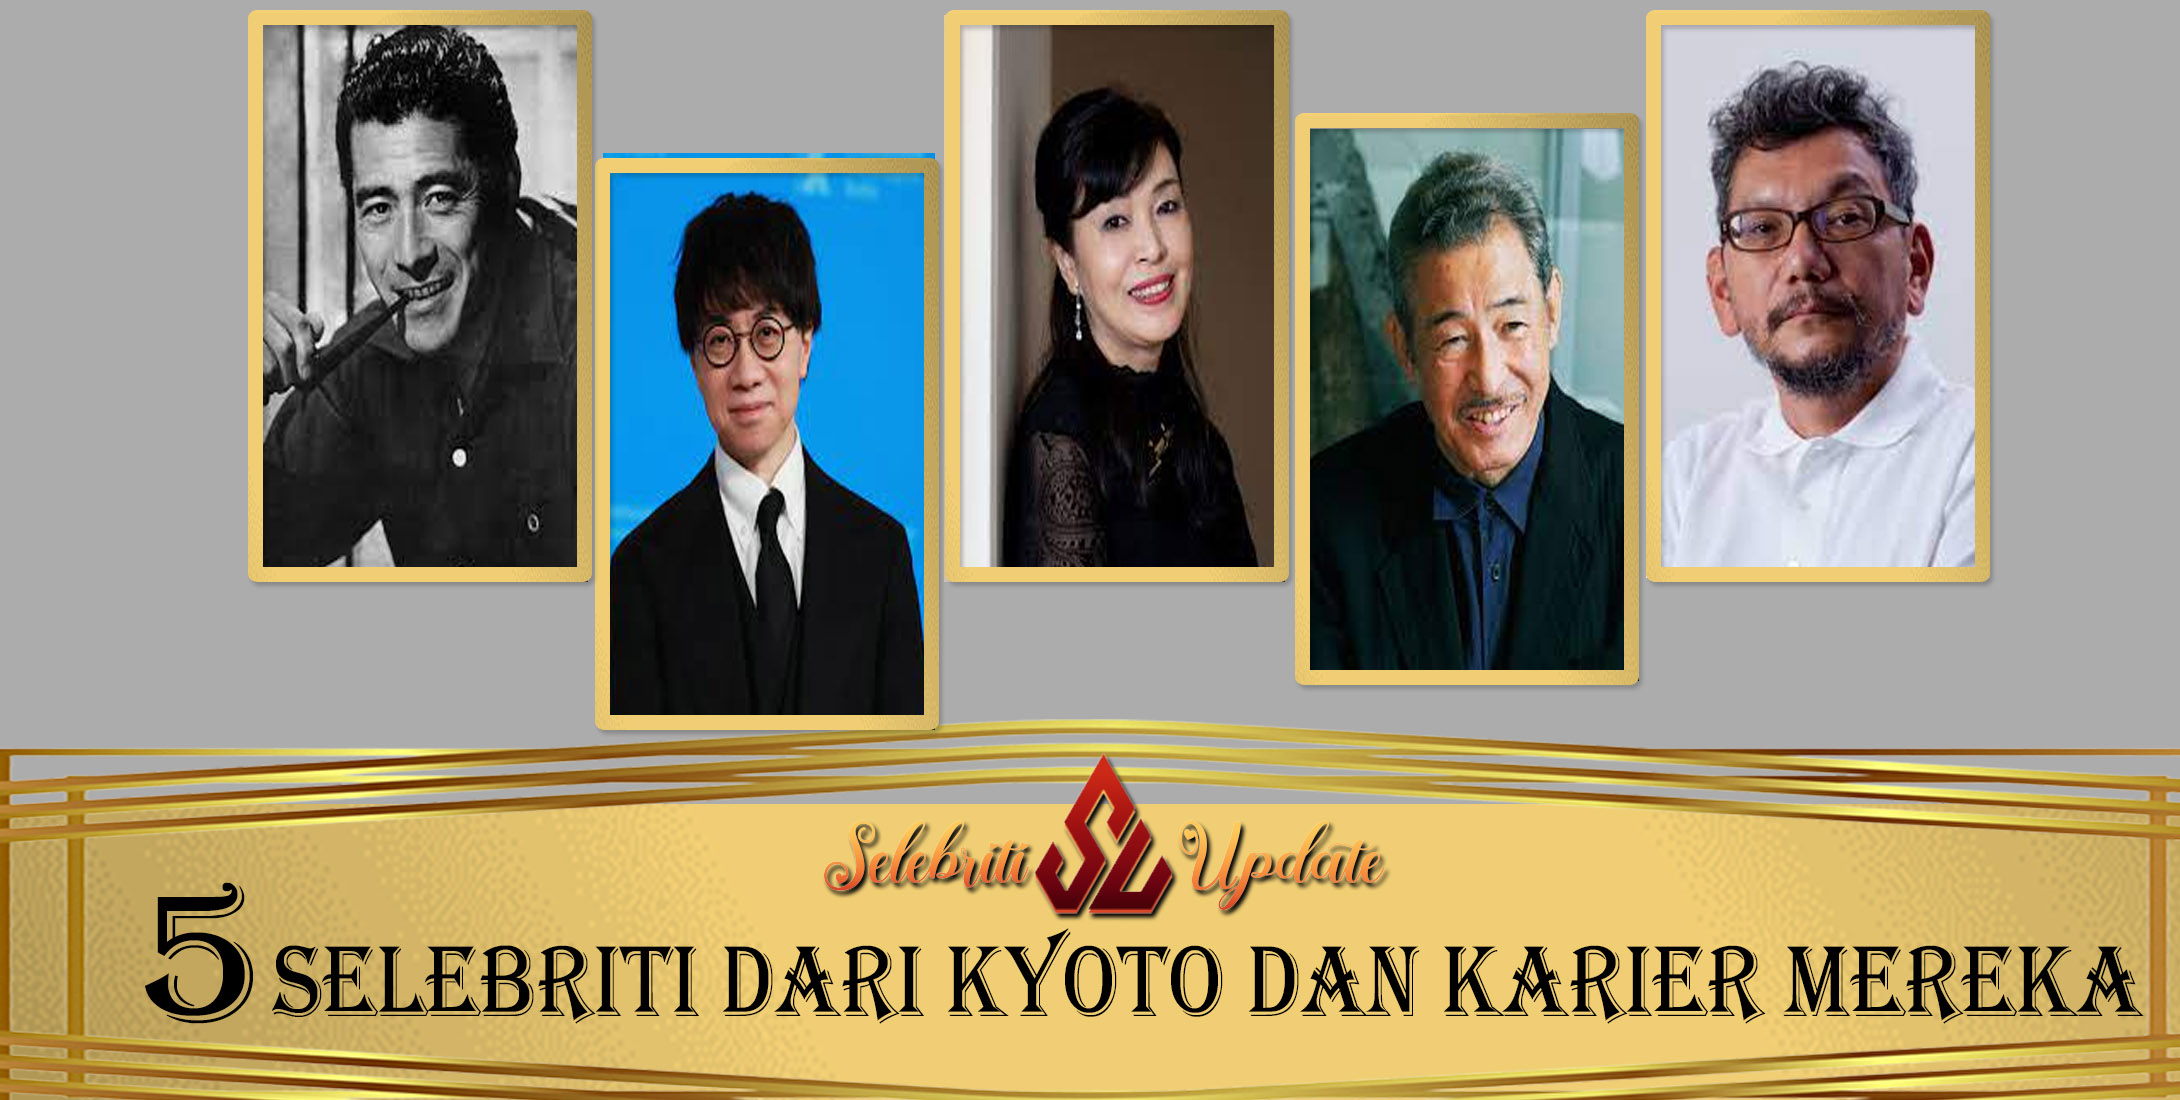 5 Selebriti dari Kyoto dan Karier Mereka